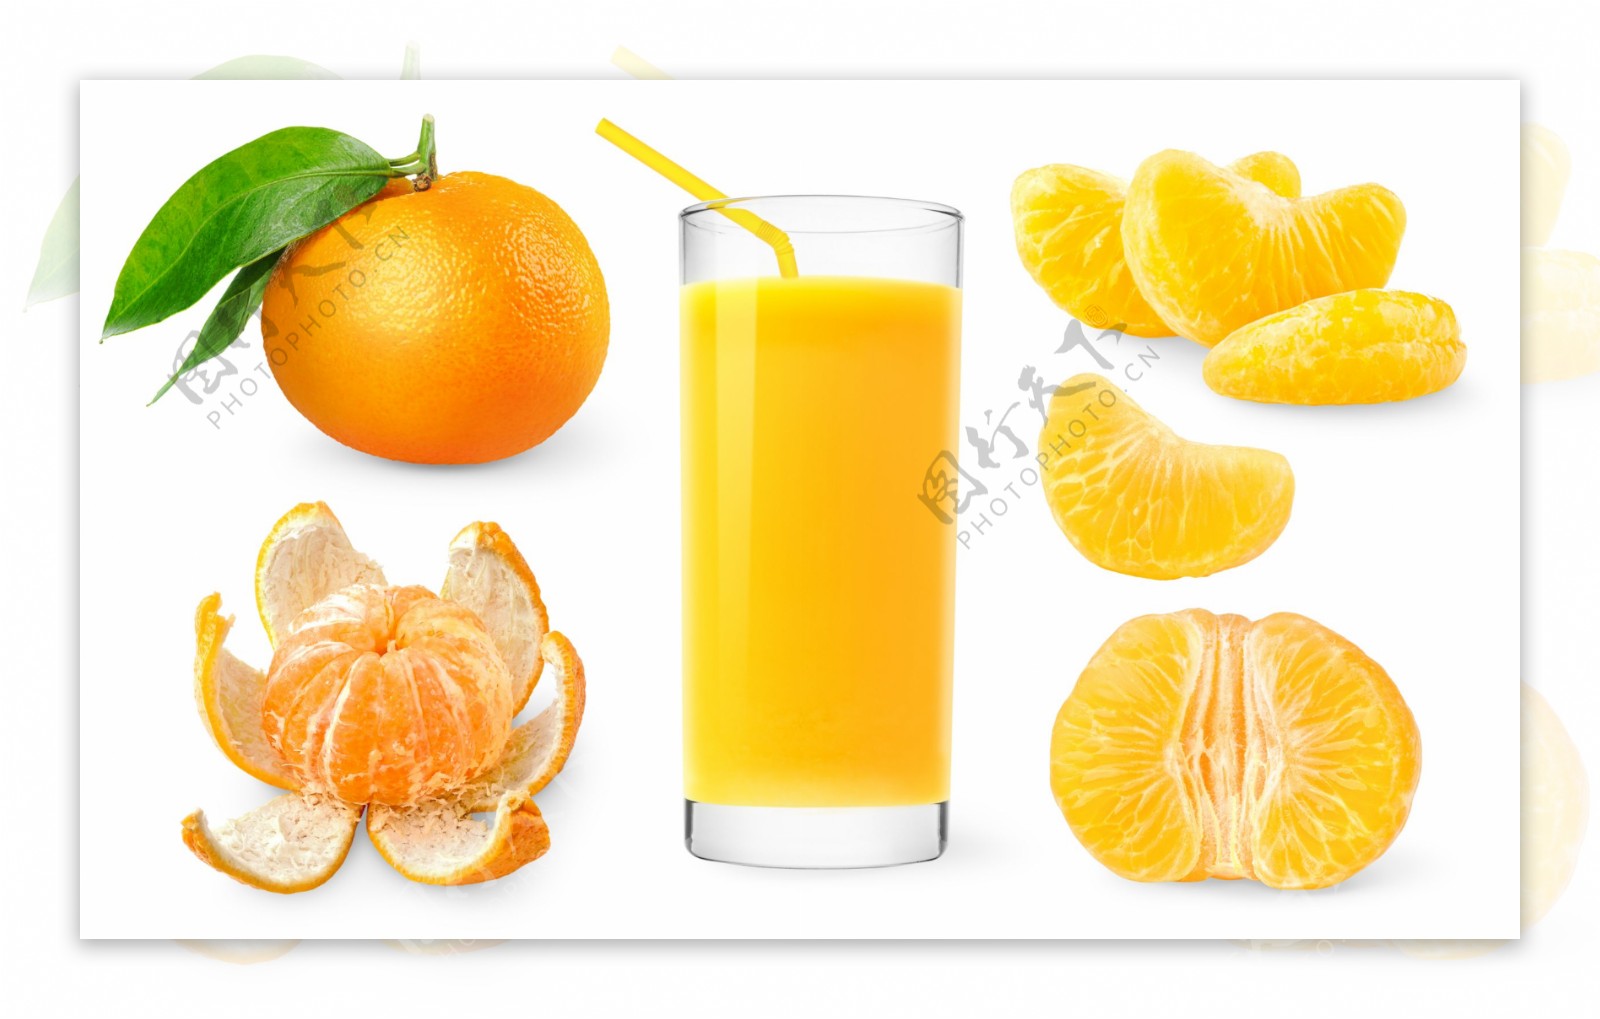 水果桔子汁图片